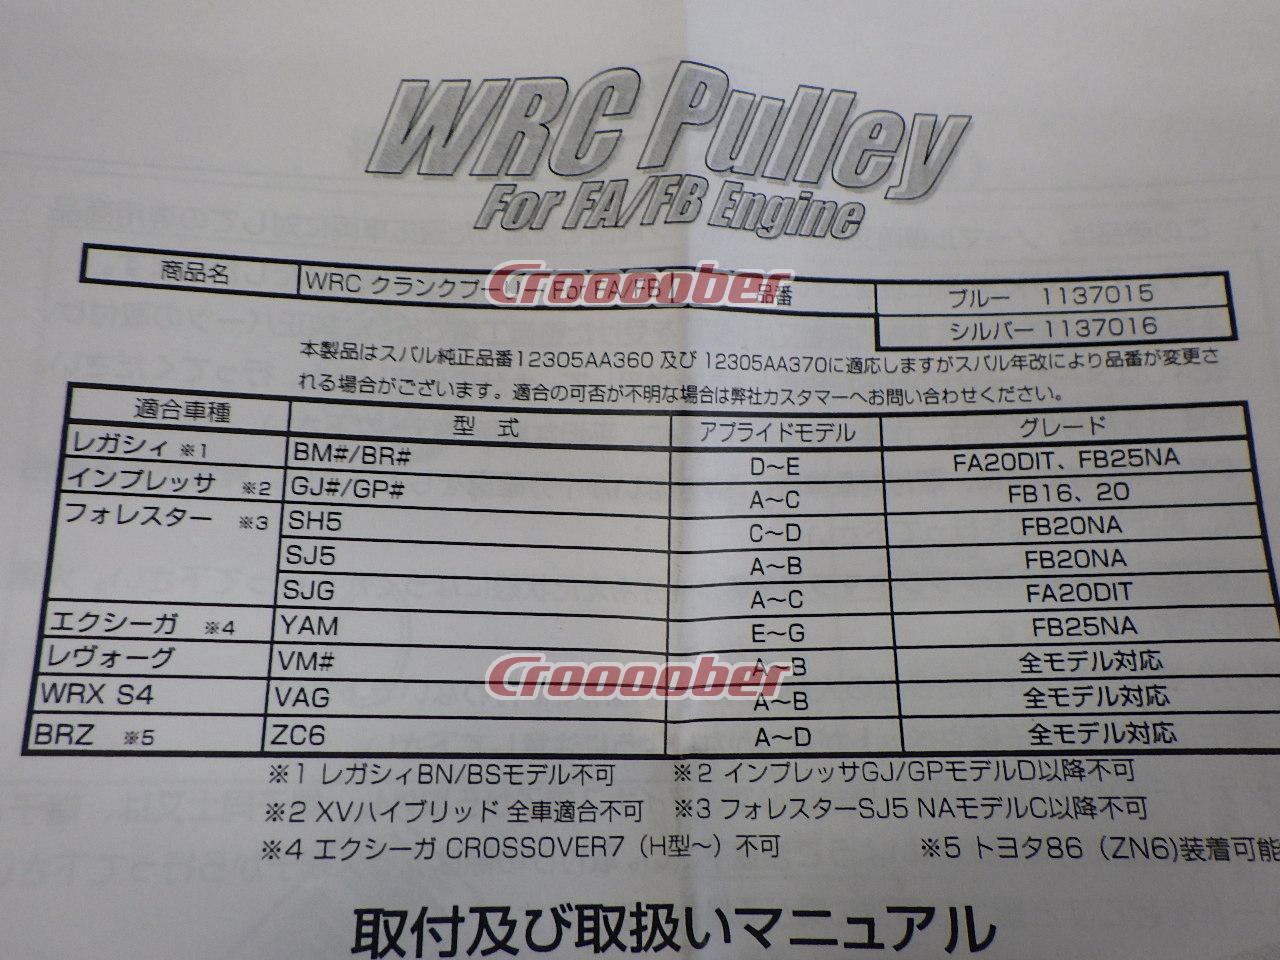 ZERO/SPORTS WRCクランクプーリー ブルーモデル 品番1137015 未使用